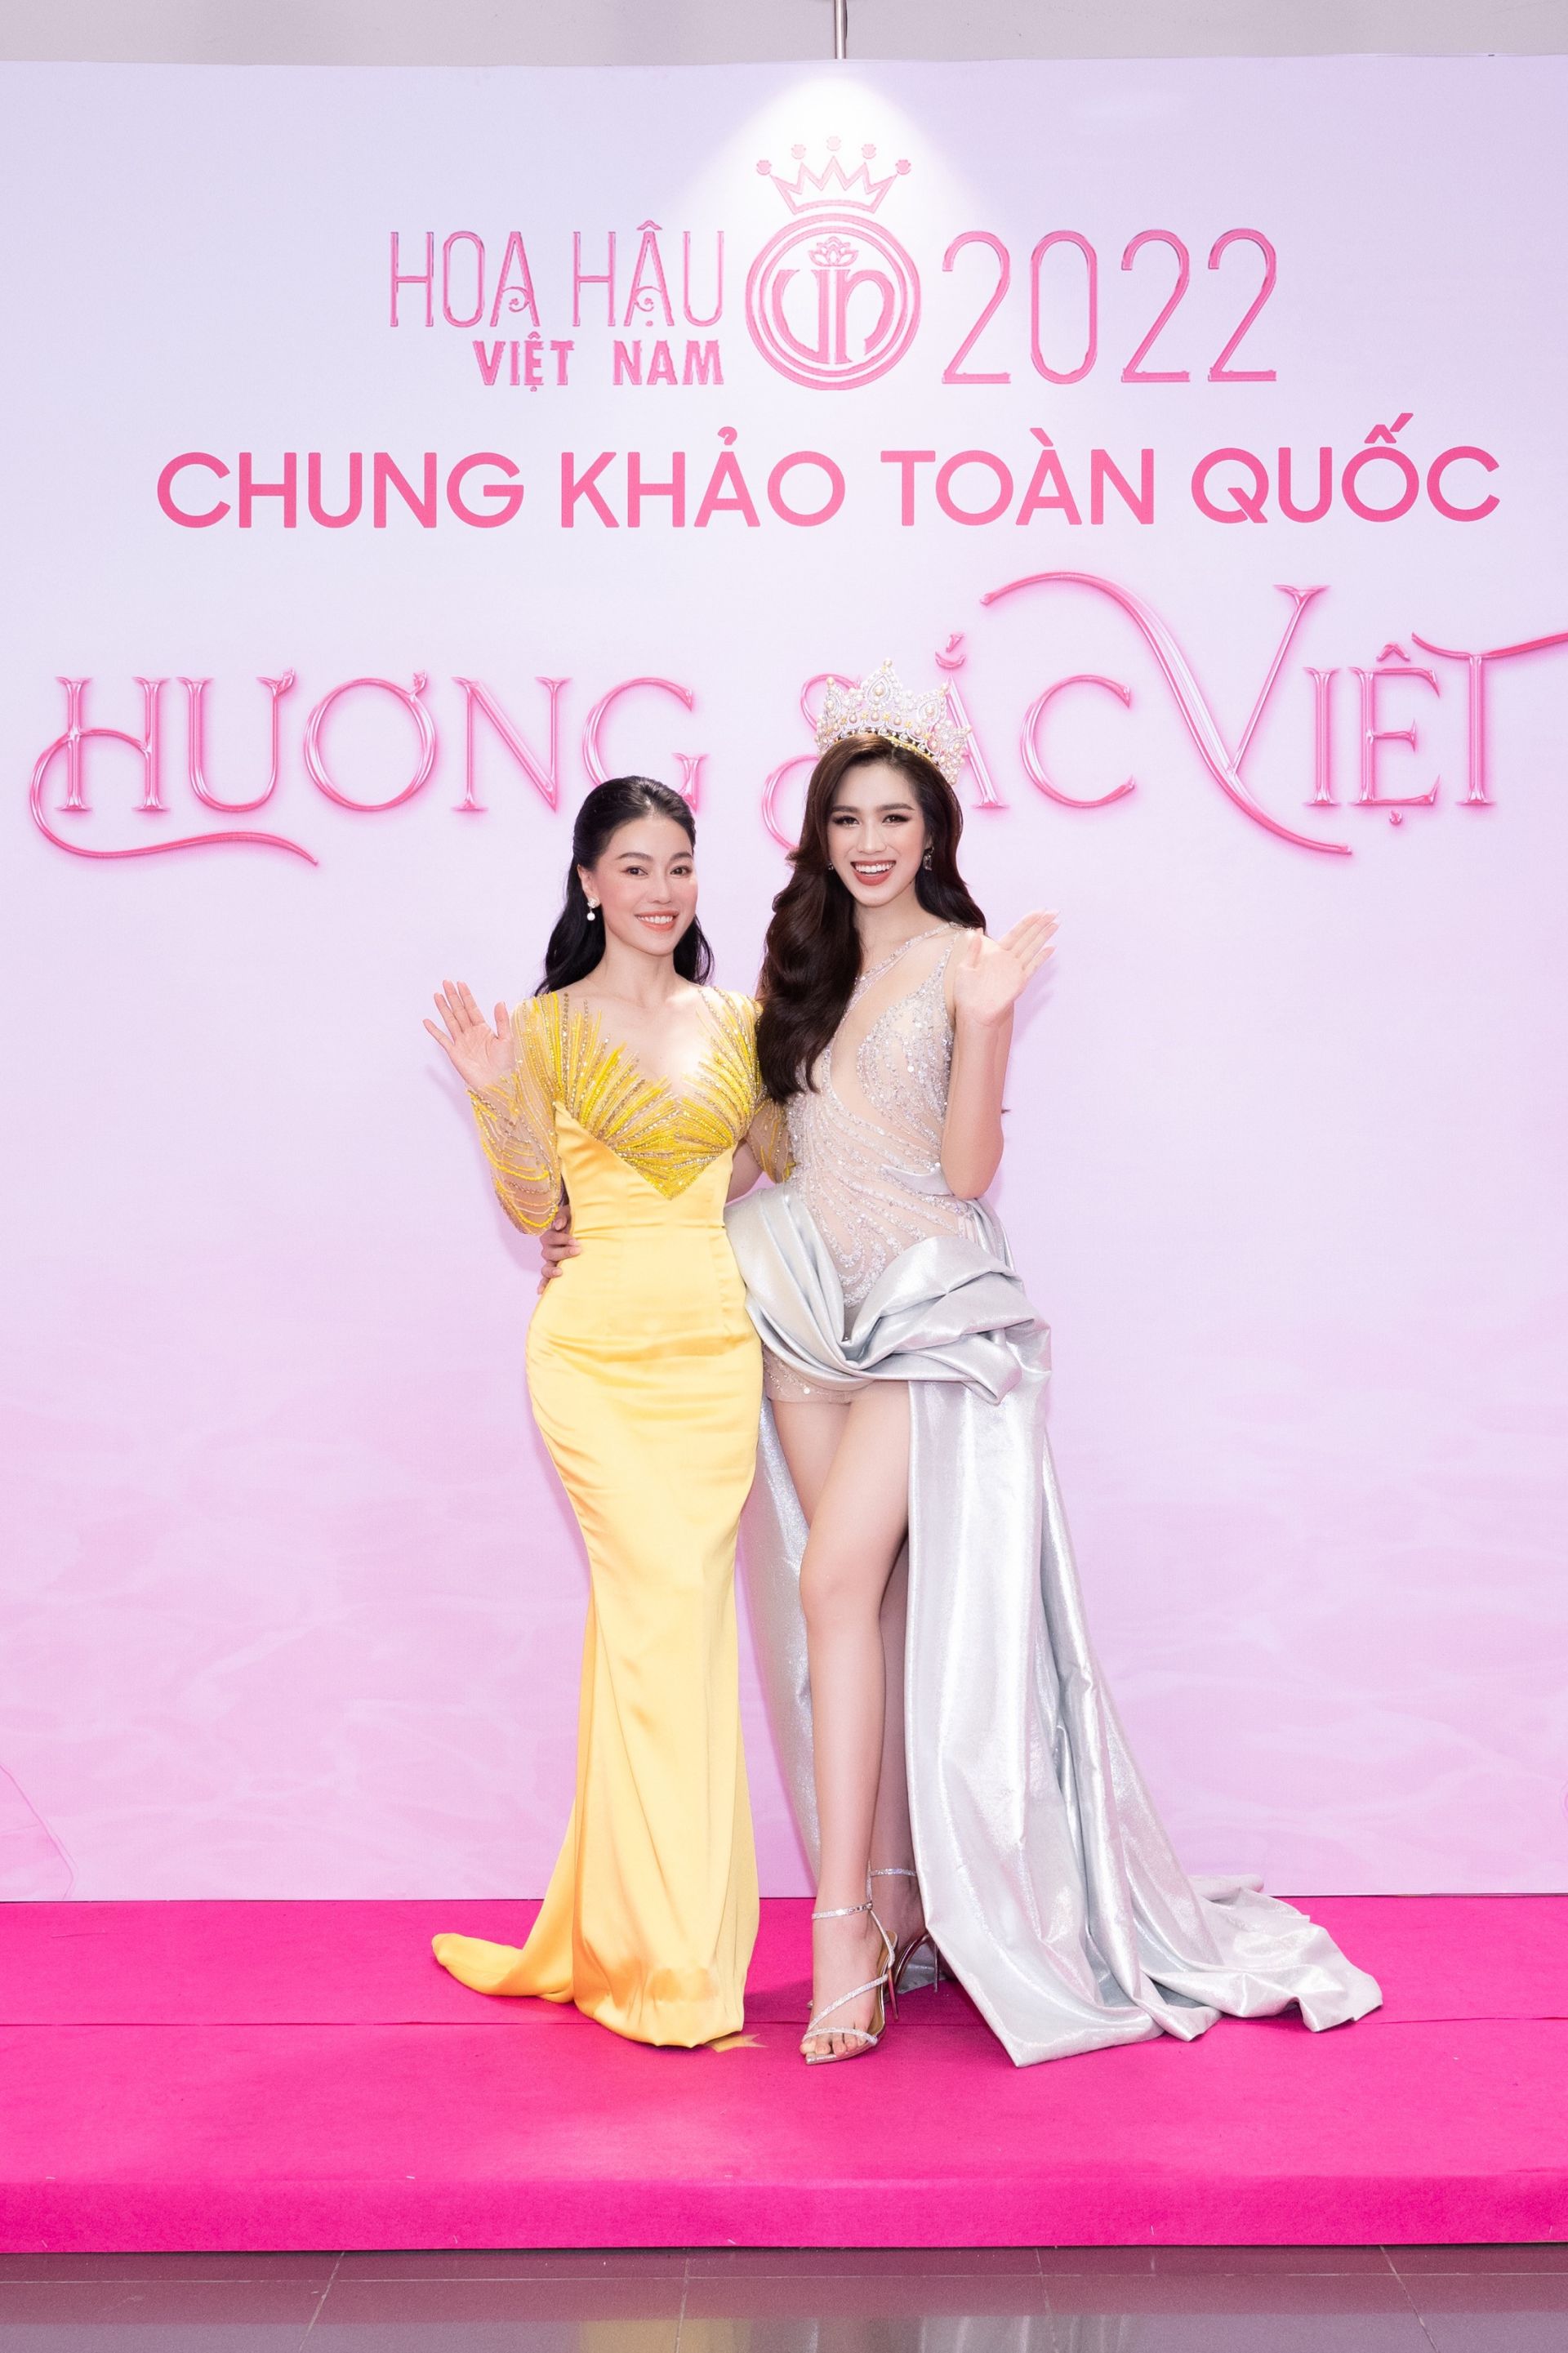 “Bà trùm Hoa hậu” Phạm Kim Dung - Phó trưởng BTC Hoa hậu Việt Nam nổi bật với bộ cánh mang tone vàng và Hoa hậu Đỗ Hà lựa chọn tone bạc quyền lực